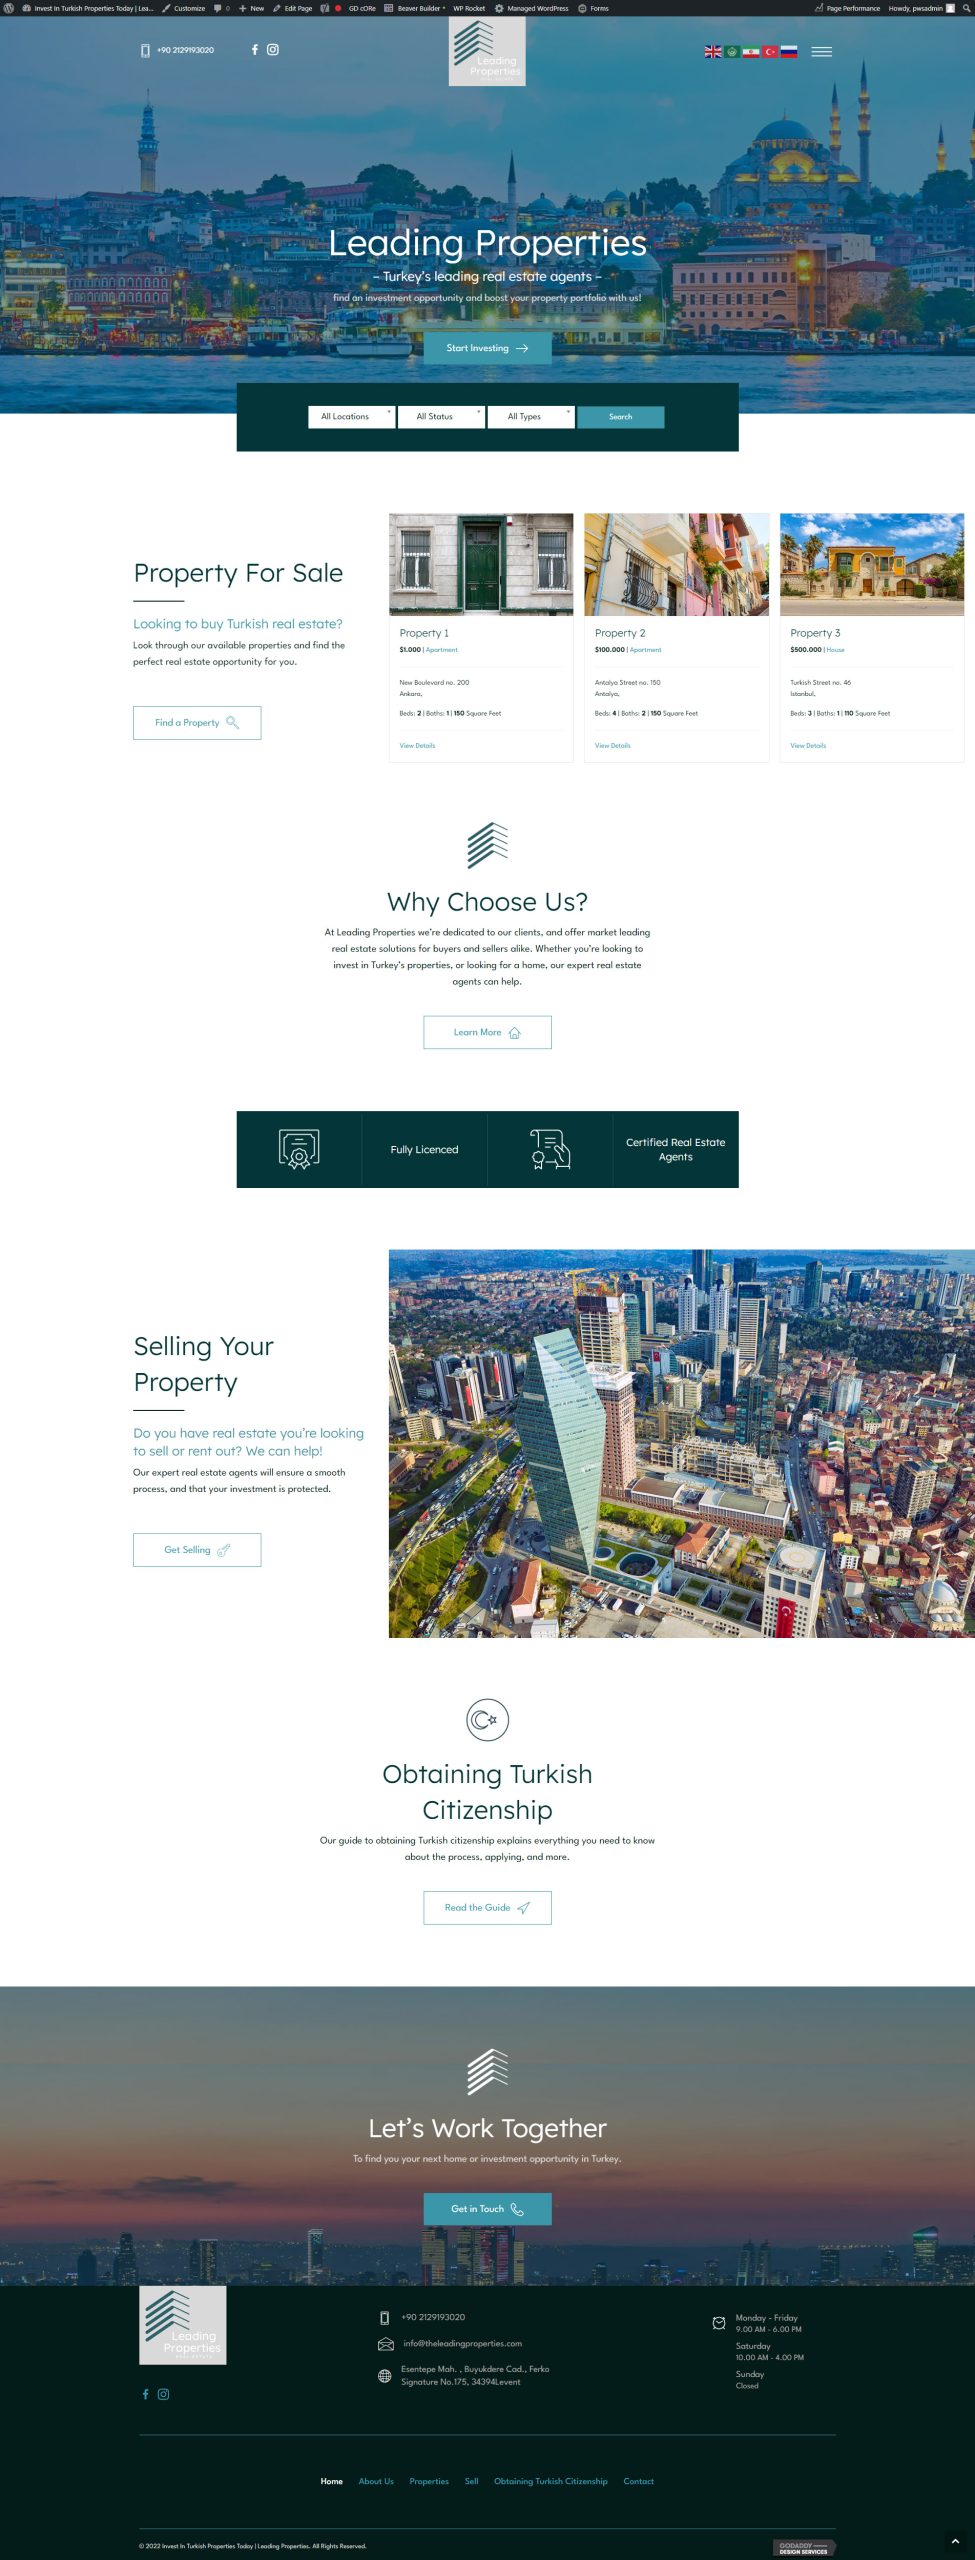 Leading-Properties-homepage-desktop